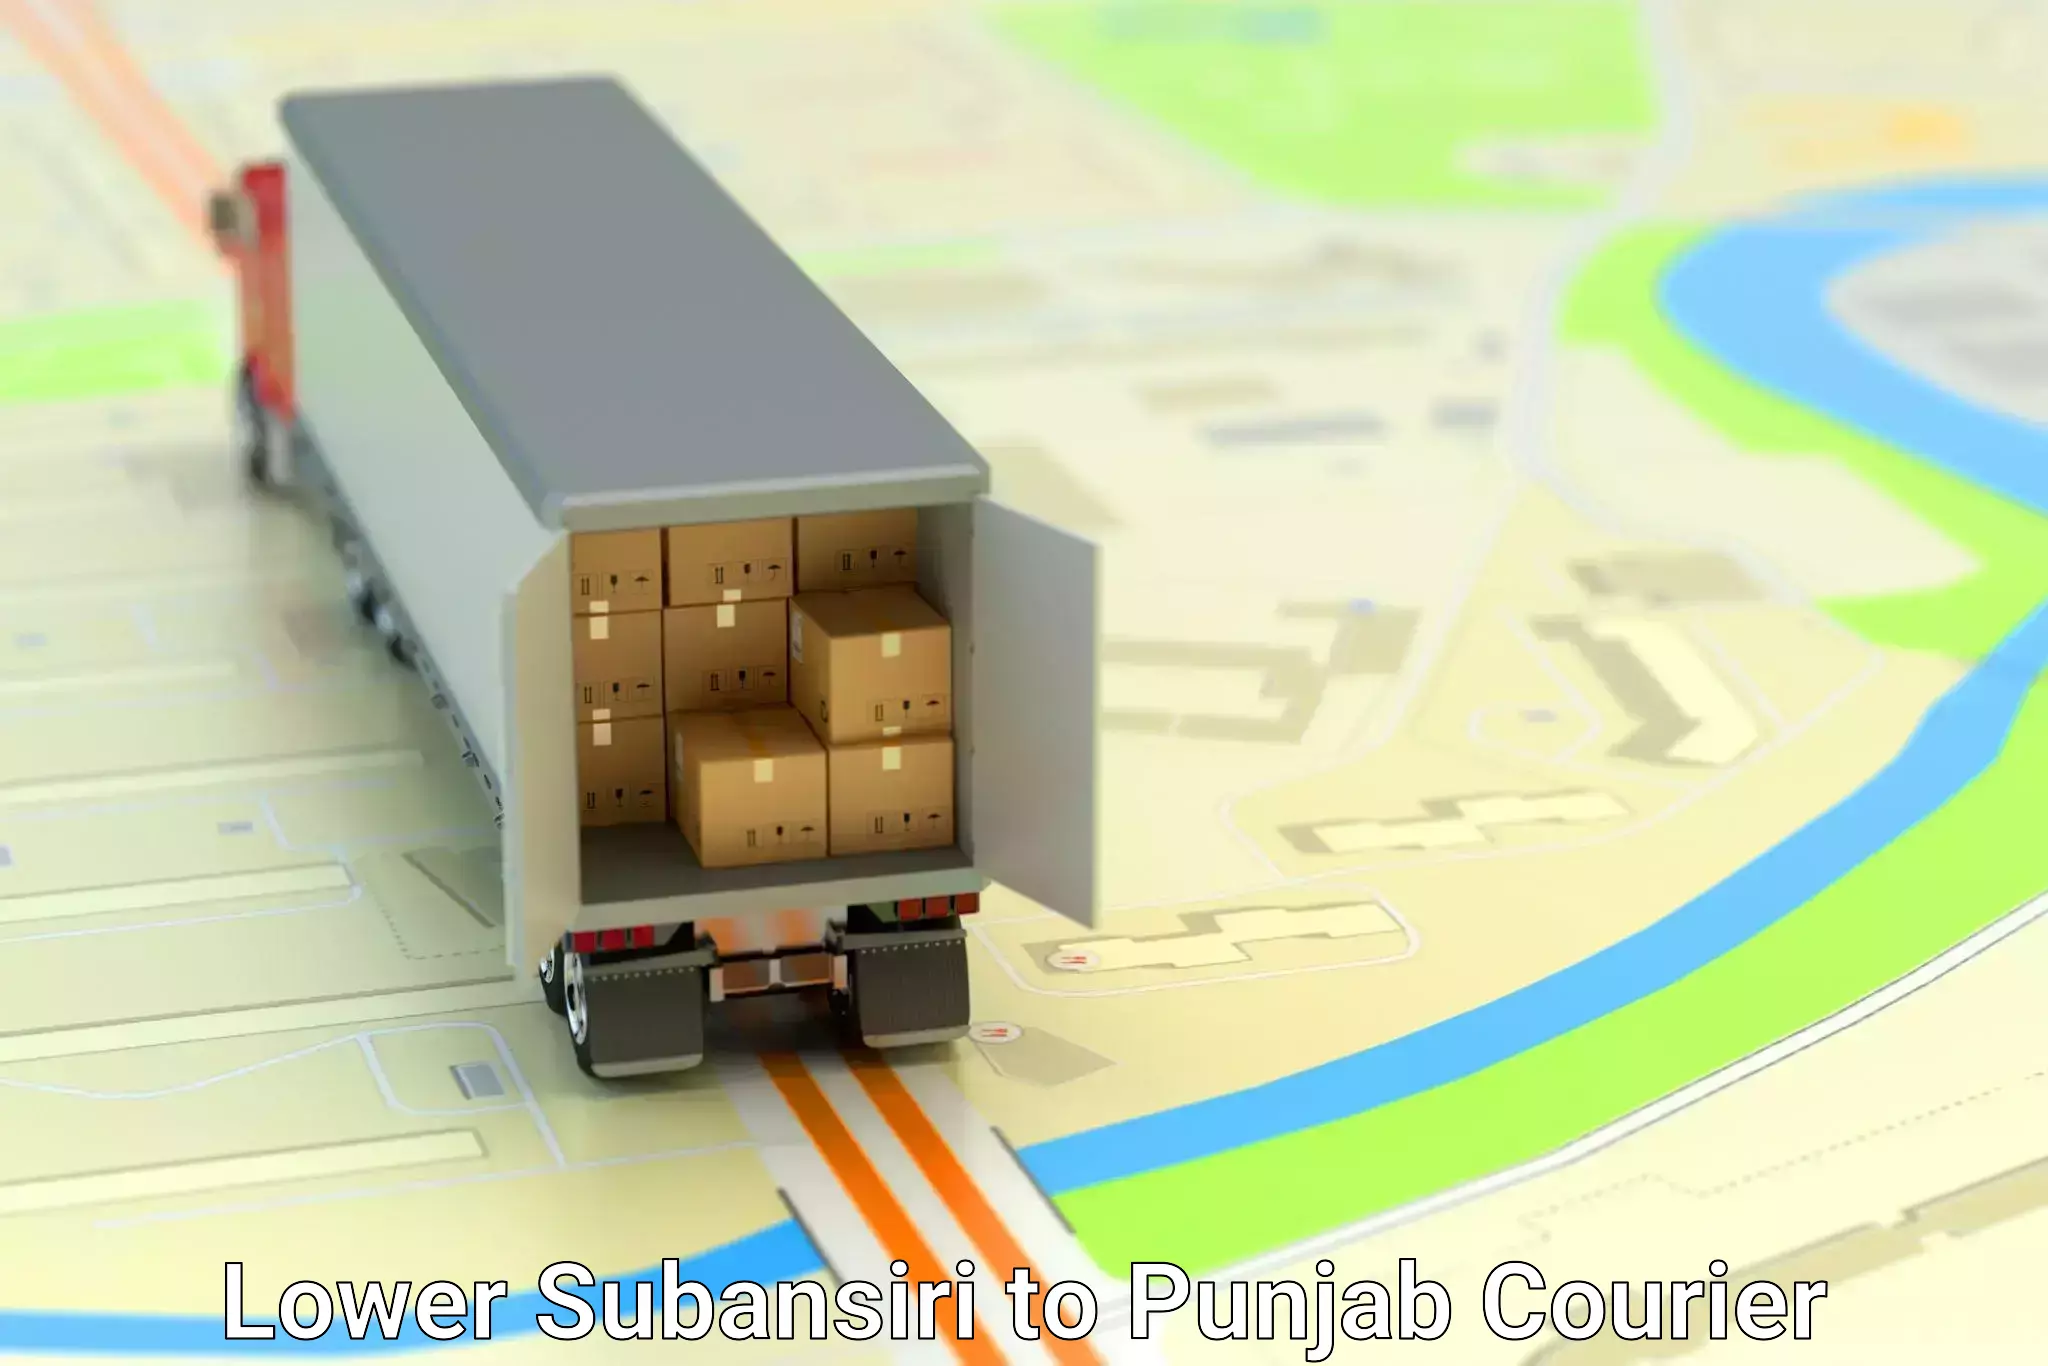 Parcel handling and care Lower Subansiri to Punjab